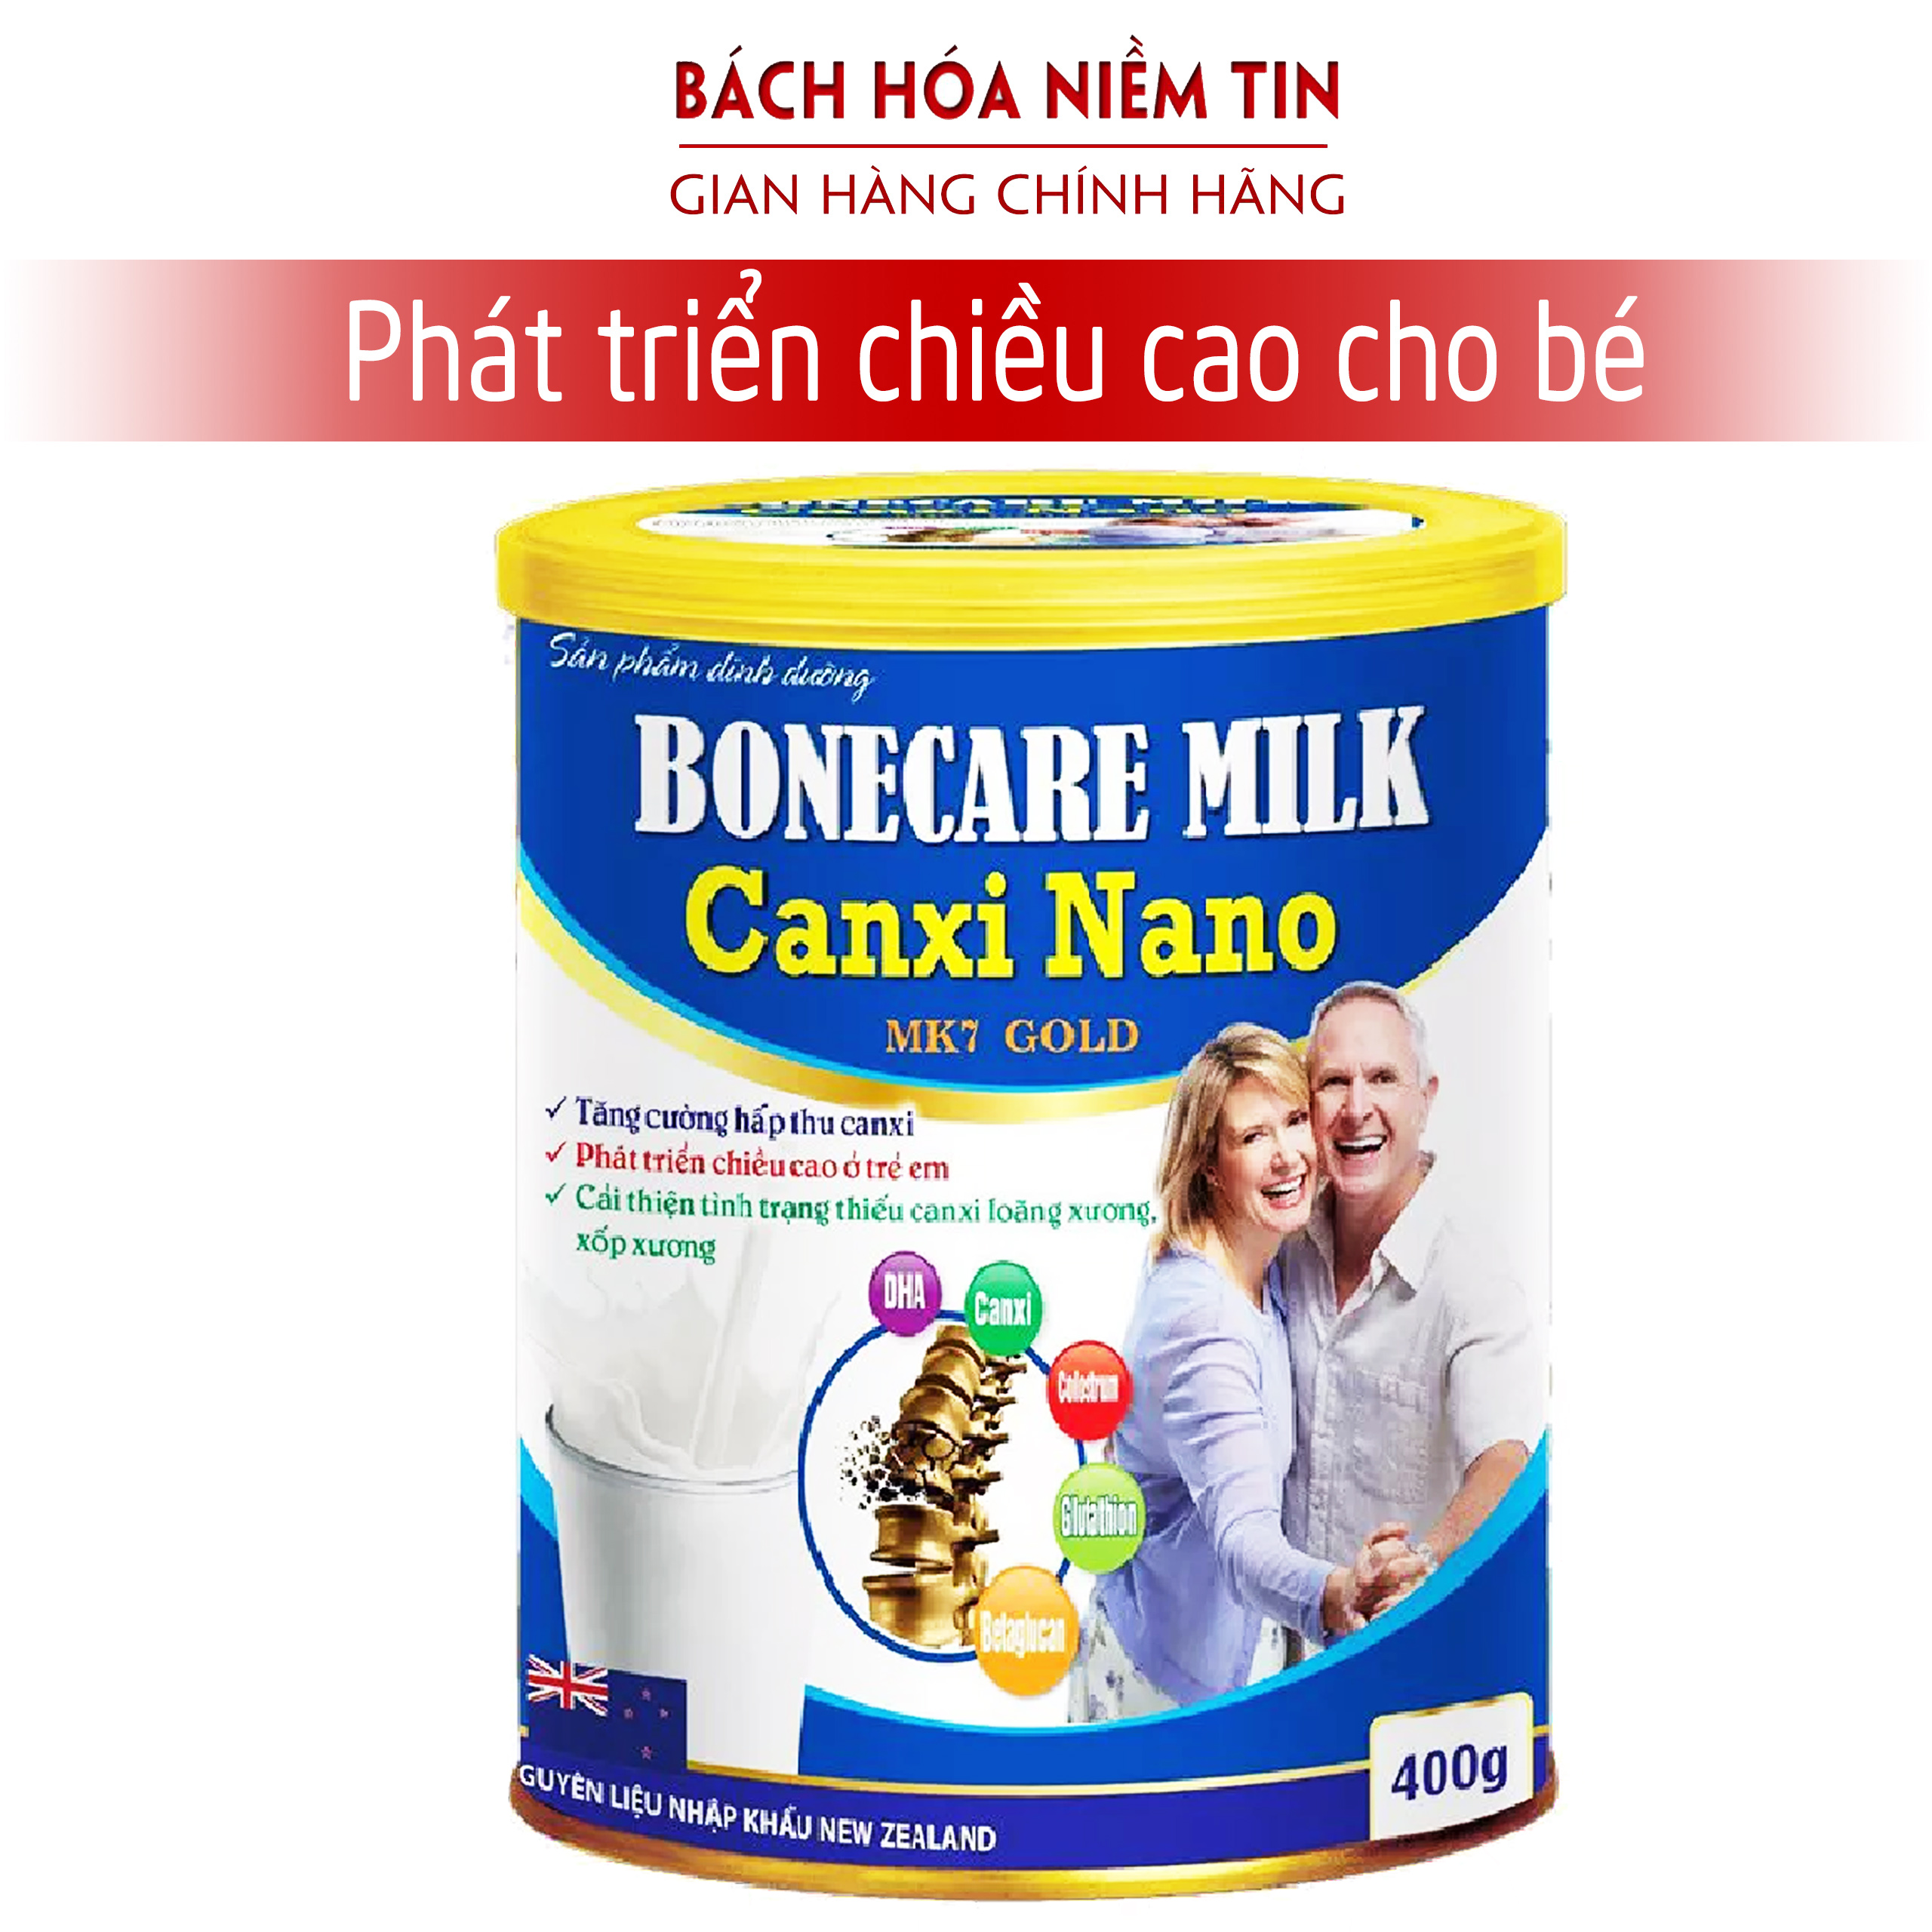 Sữa bột Boncare Milk Canxi Nano MK7 hấp thu canxi tăng chiều cao, chắc khỏe xương khớp - Hàng chính hãng